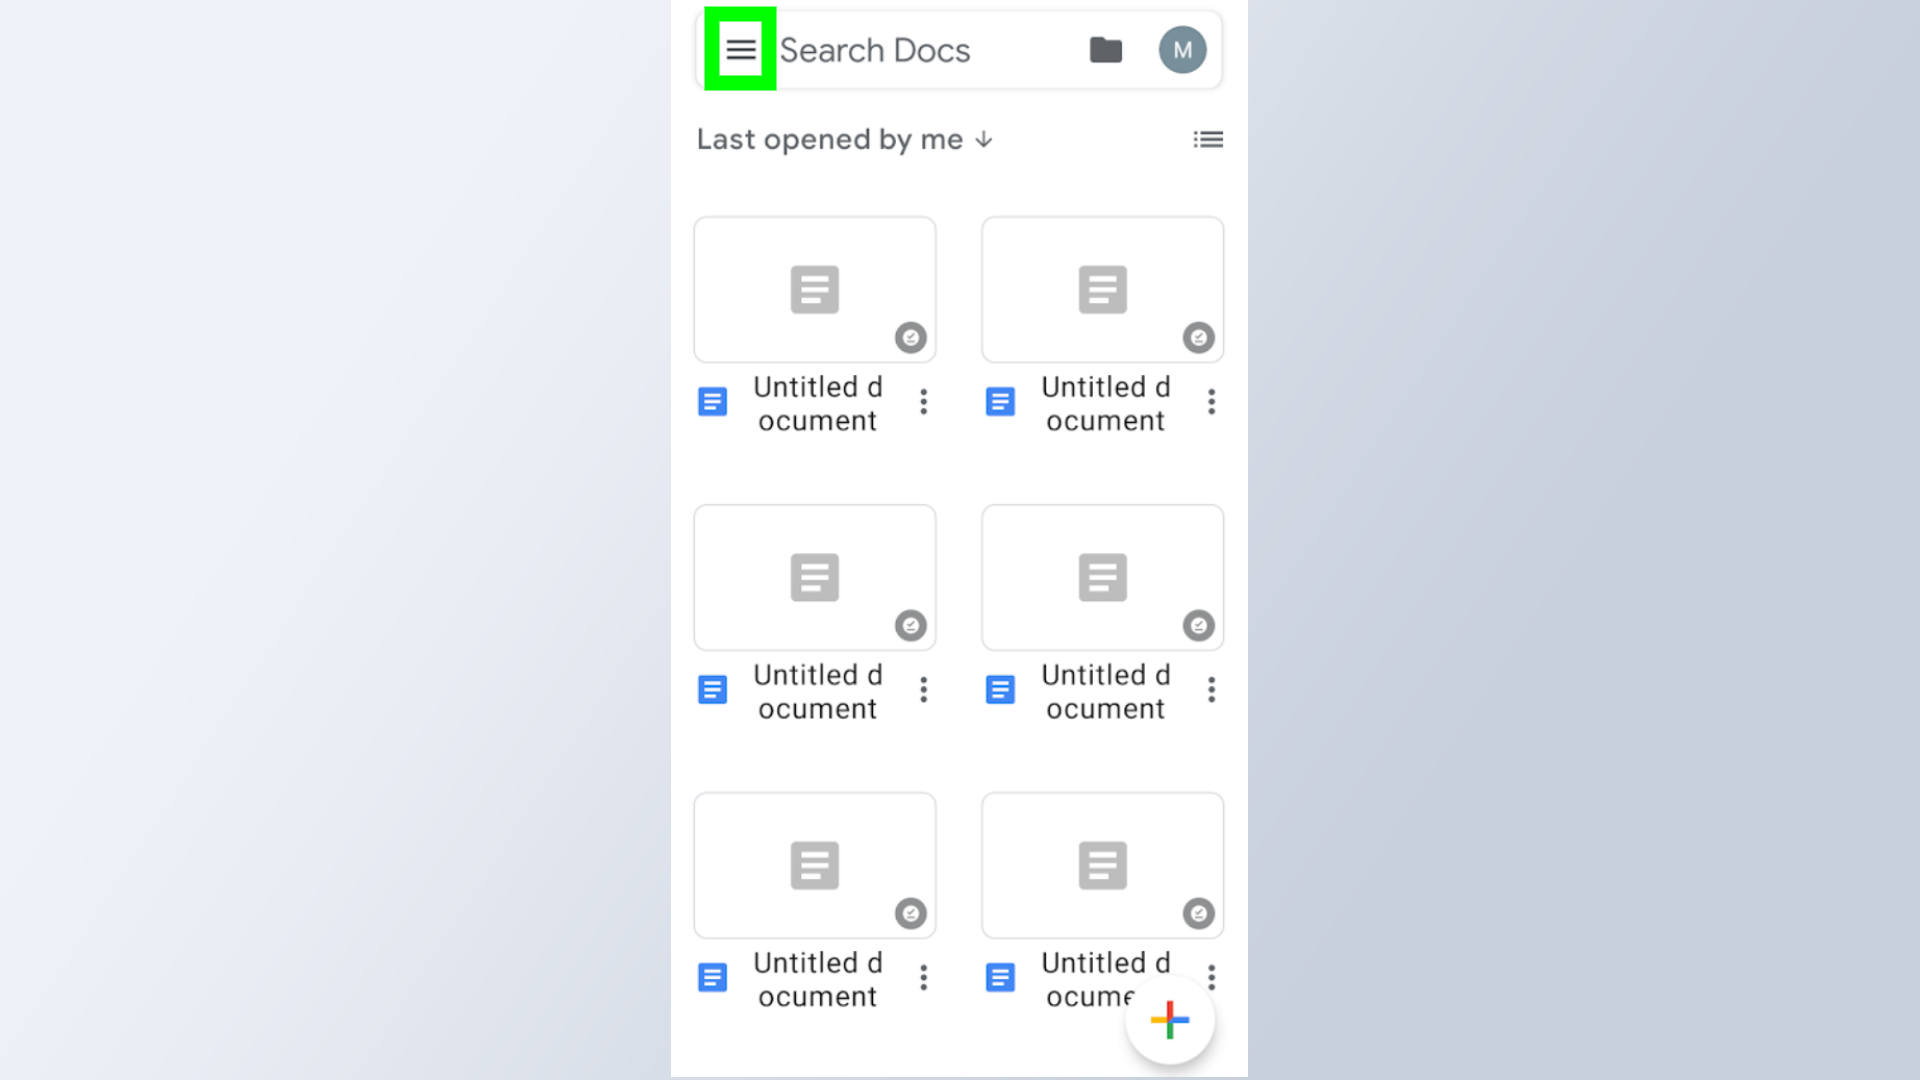 Как получить темный режим в Google Docs - снимок экрана Google Docs на мобильном устройстве с выбранным значком гамбургер-меню в верхнем левом углу